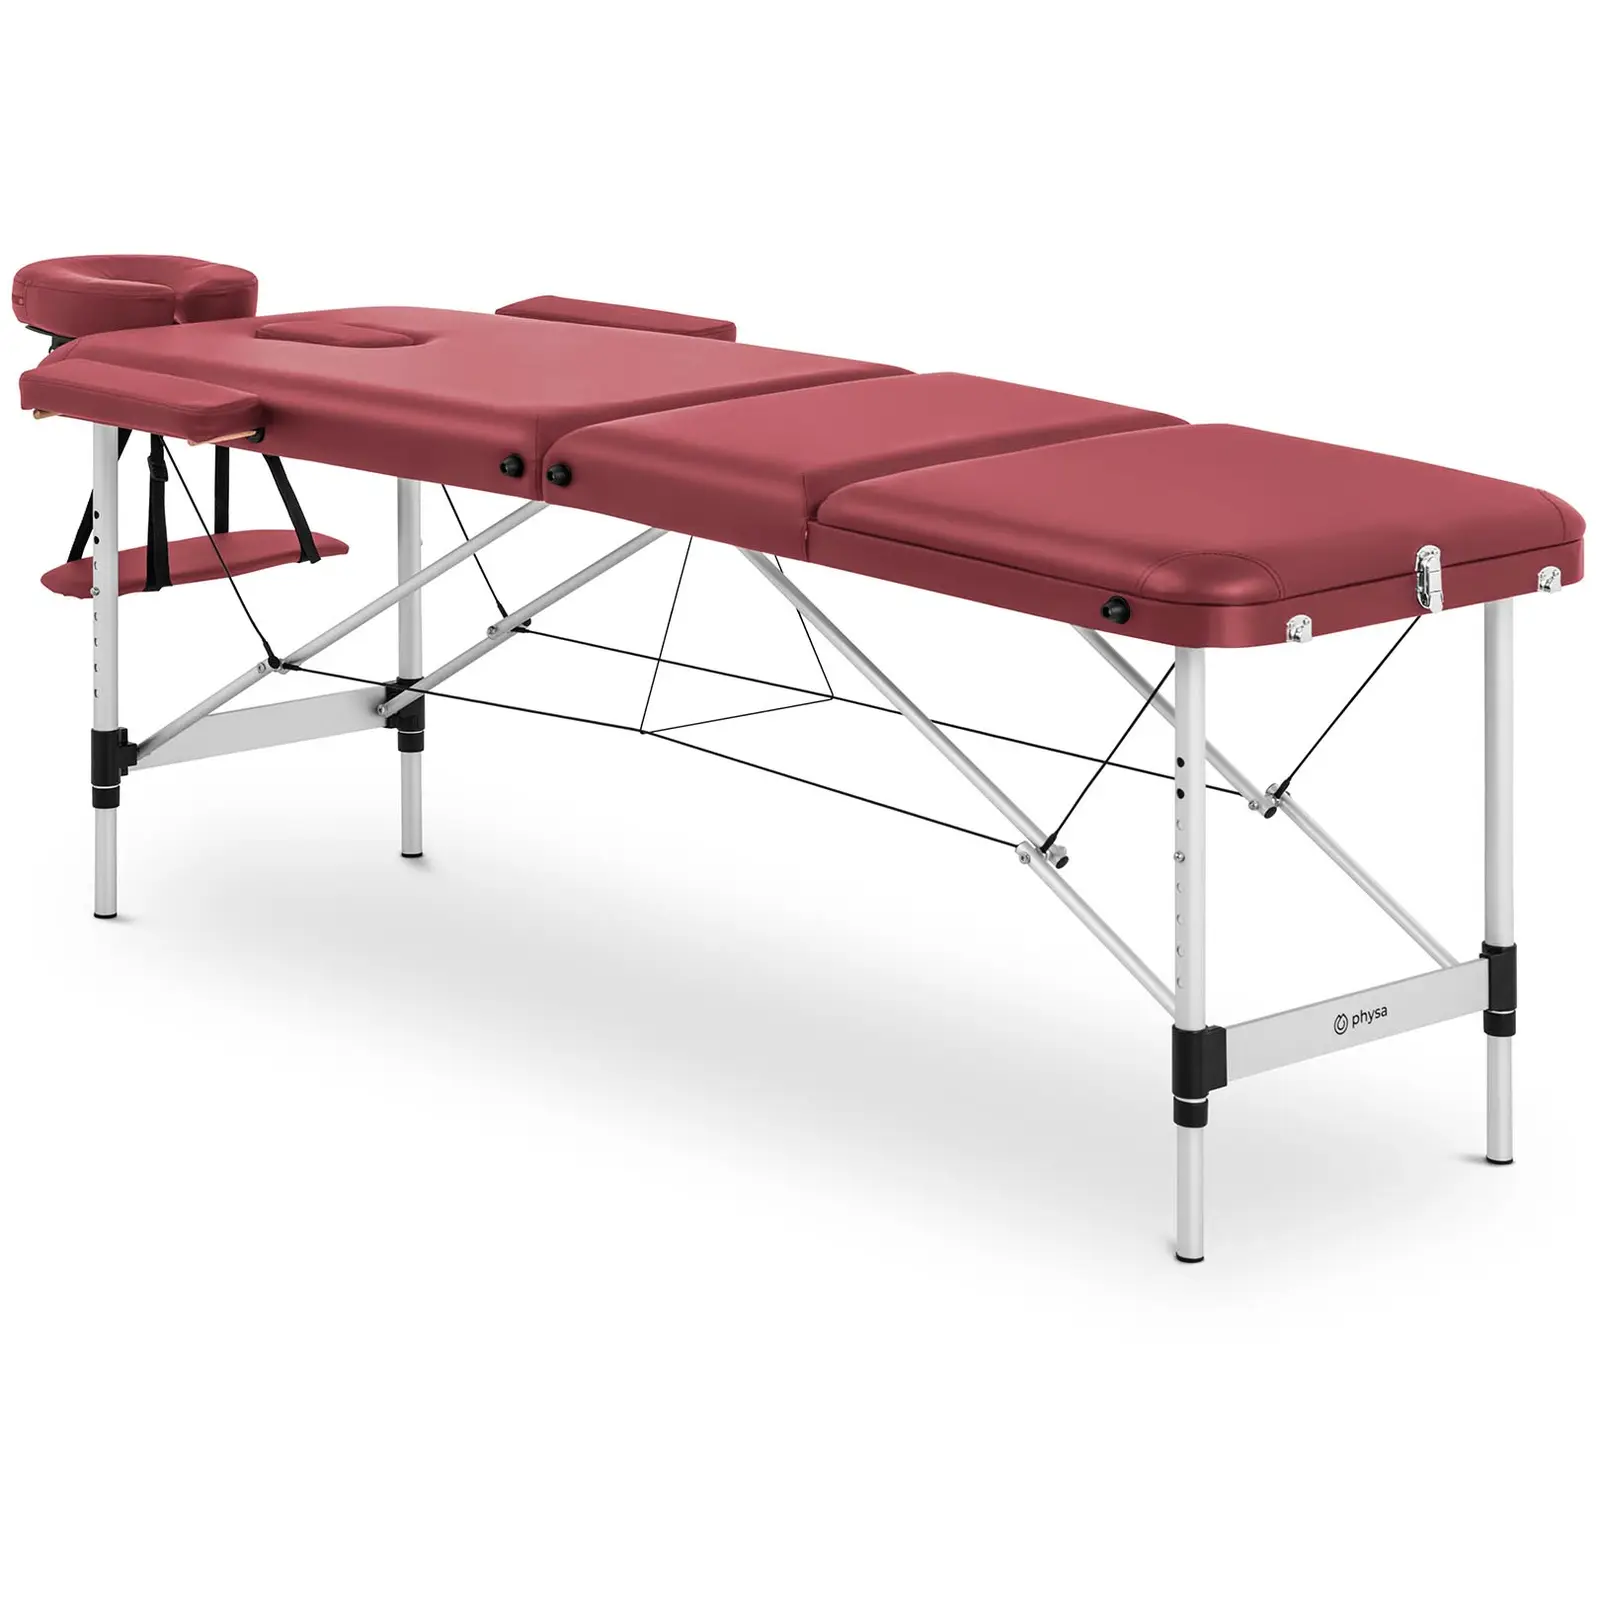 Lettino massaggio portatile - 185 x 60 x 60-81 cm - 180 kg - Rosso